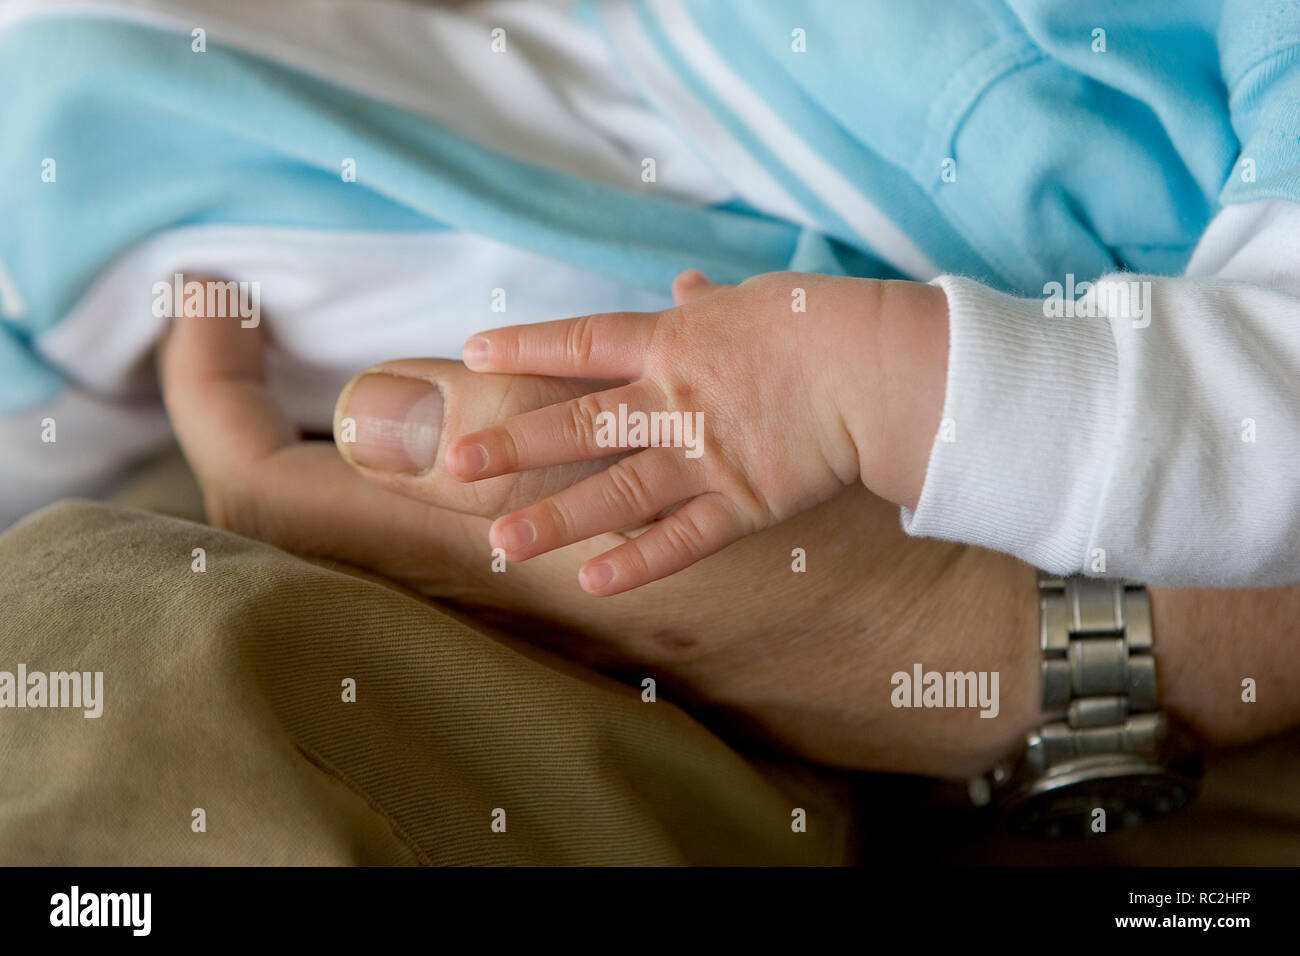 Cerca de un bebé mano toque mano adulta juntos Foto de stock